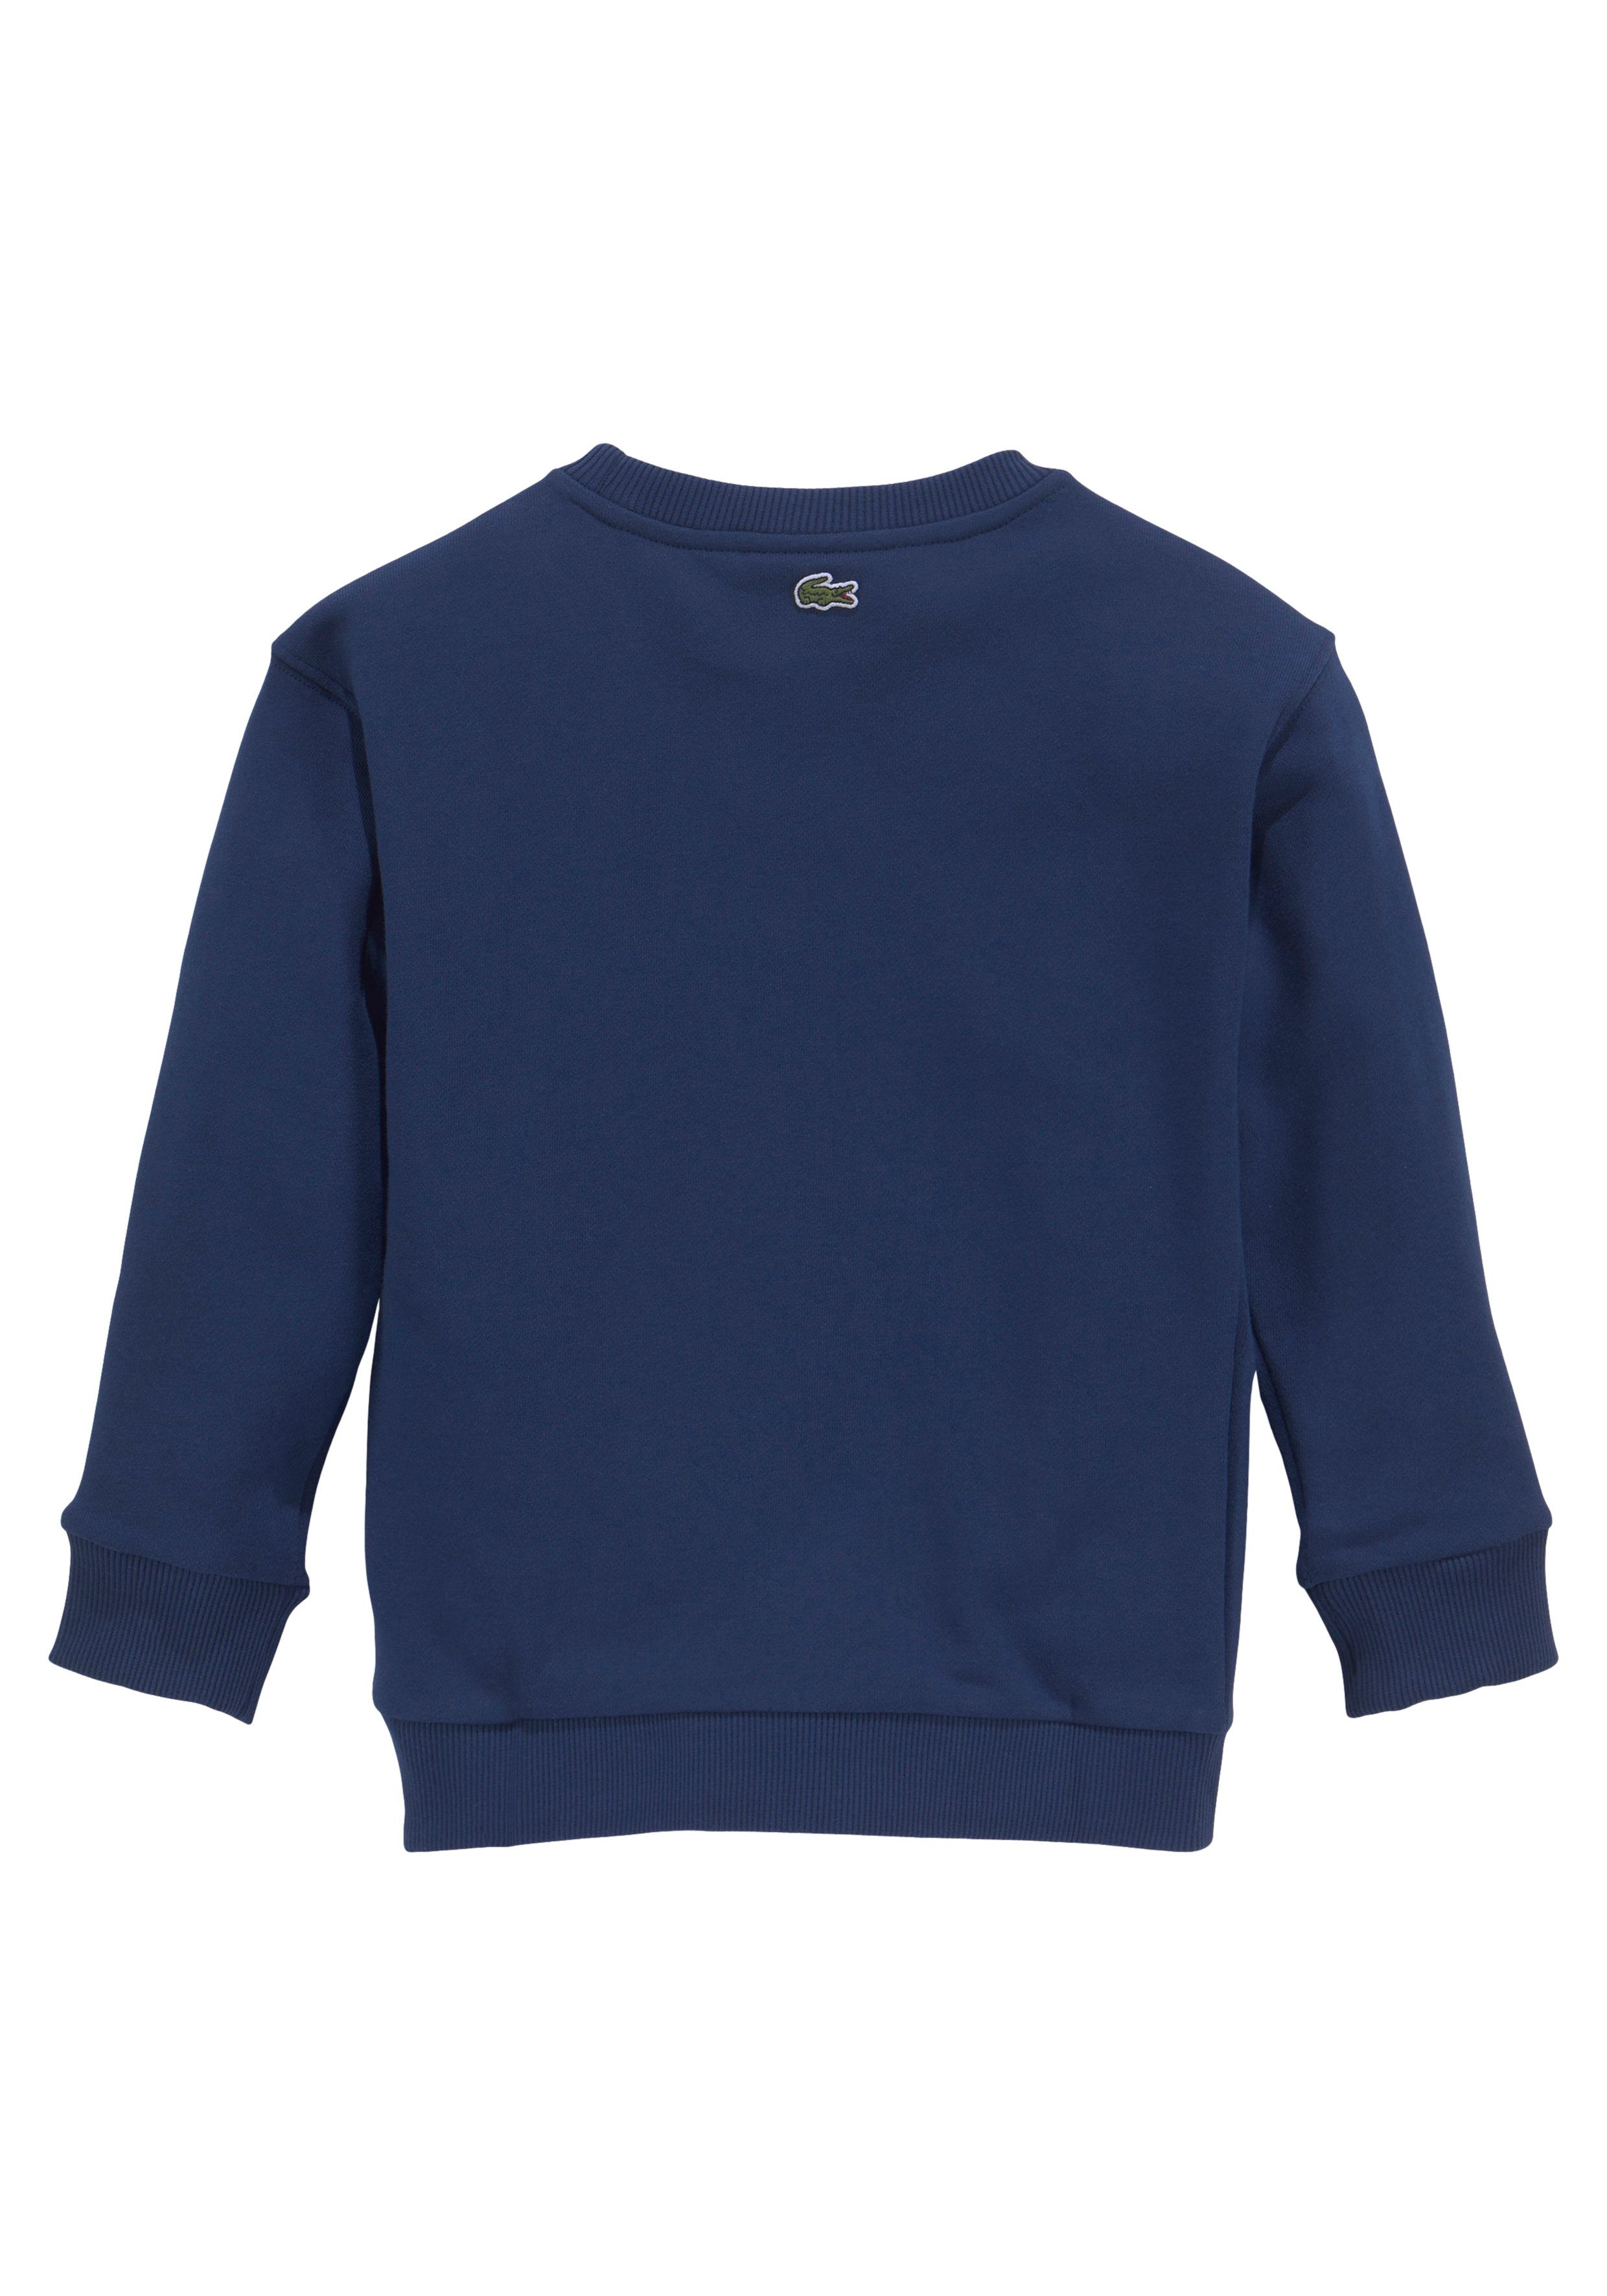 Lacoste Sweatshirt Kinder Kids Junior Brust auf Labeldruck blau modernem der MiniMe,mit